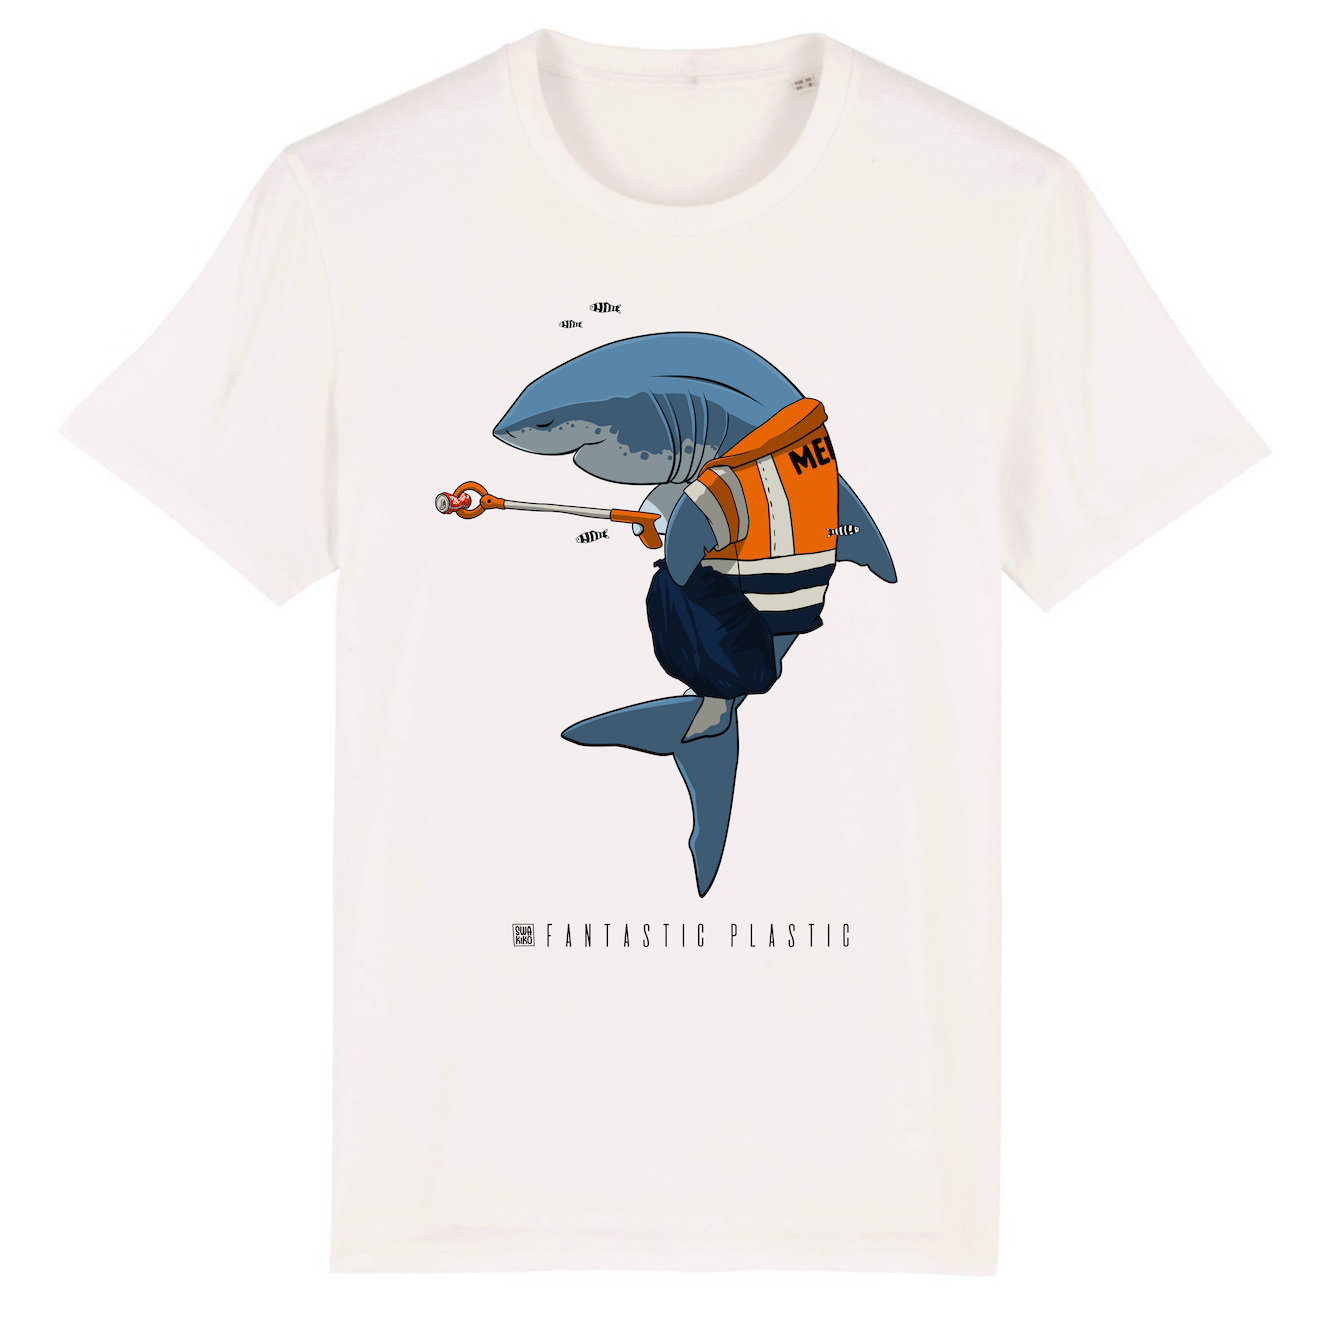 Wit T-shirt met design van een haai die de zee schoonmaakt met een knijpstok: Cleaning Shark